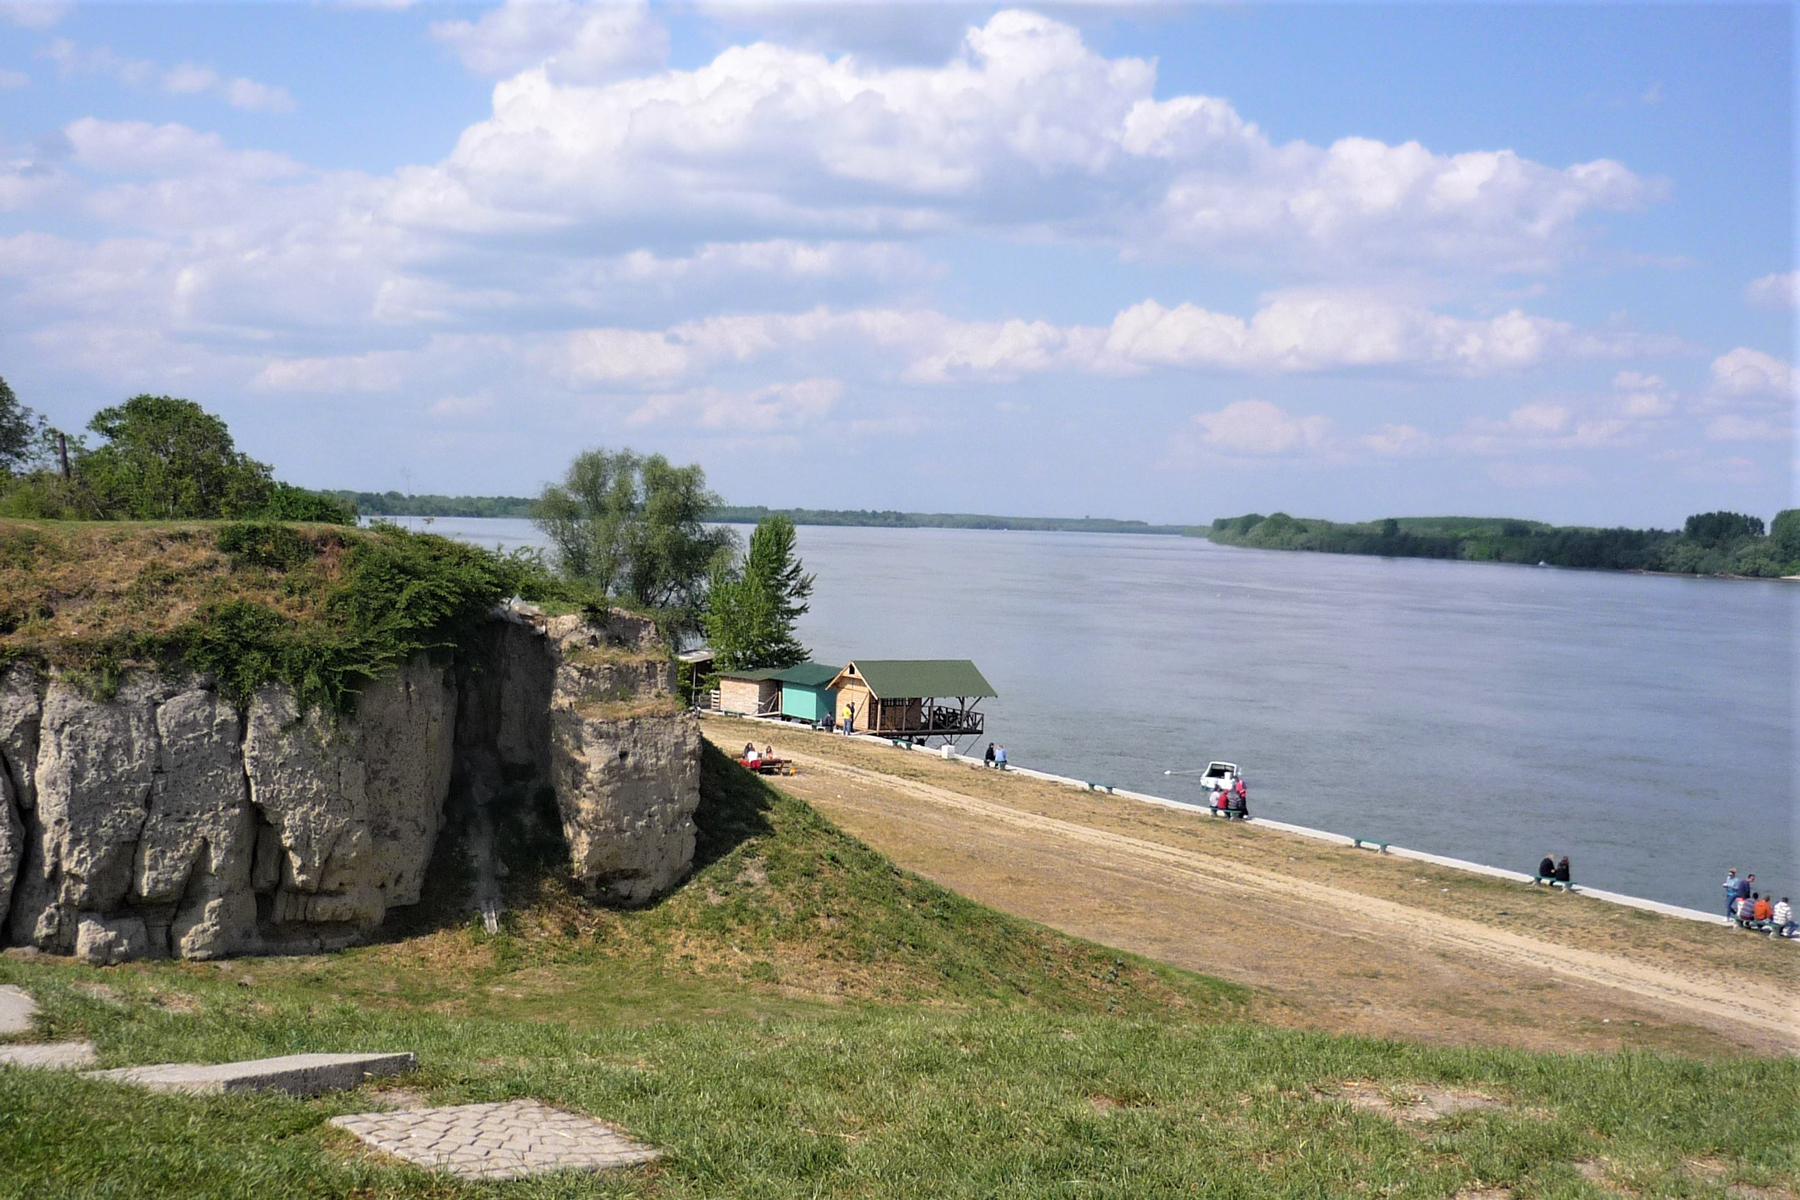 Arheološko nalazište Vinča je pored Dunava na teritoriji Grocke.